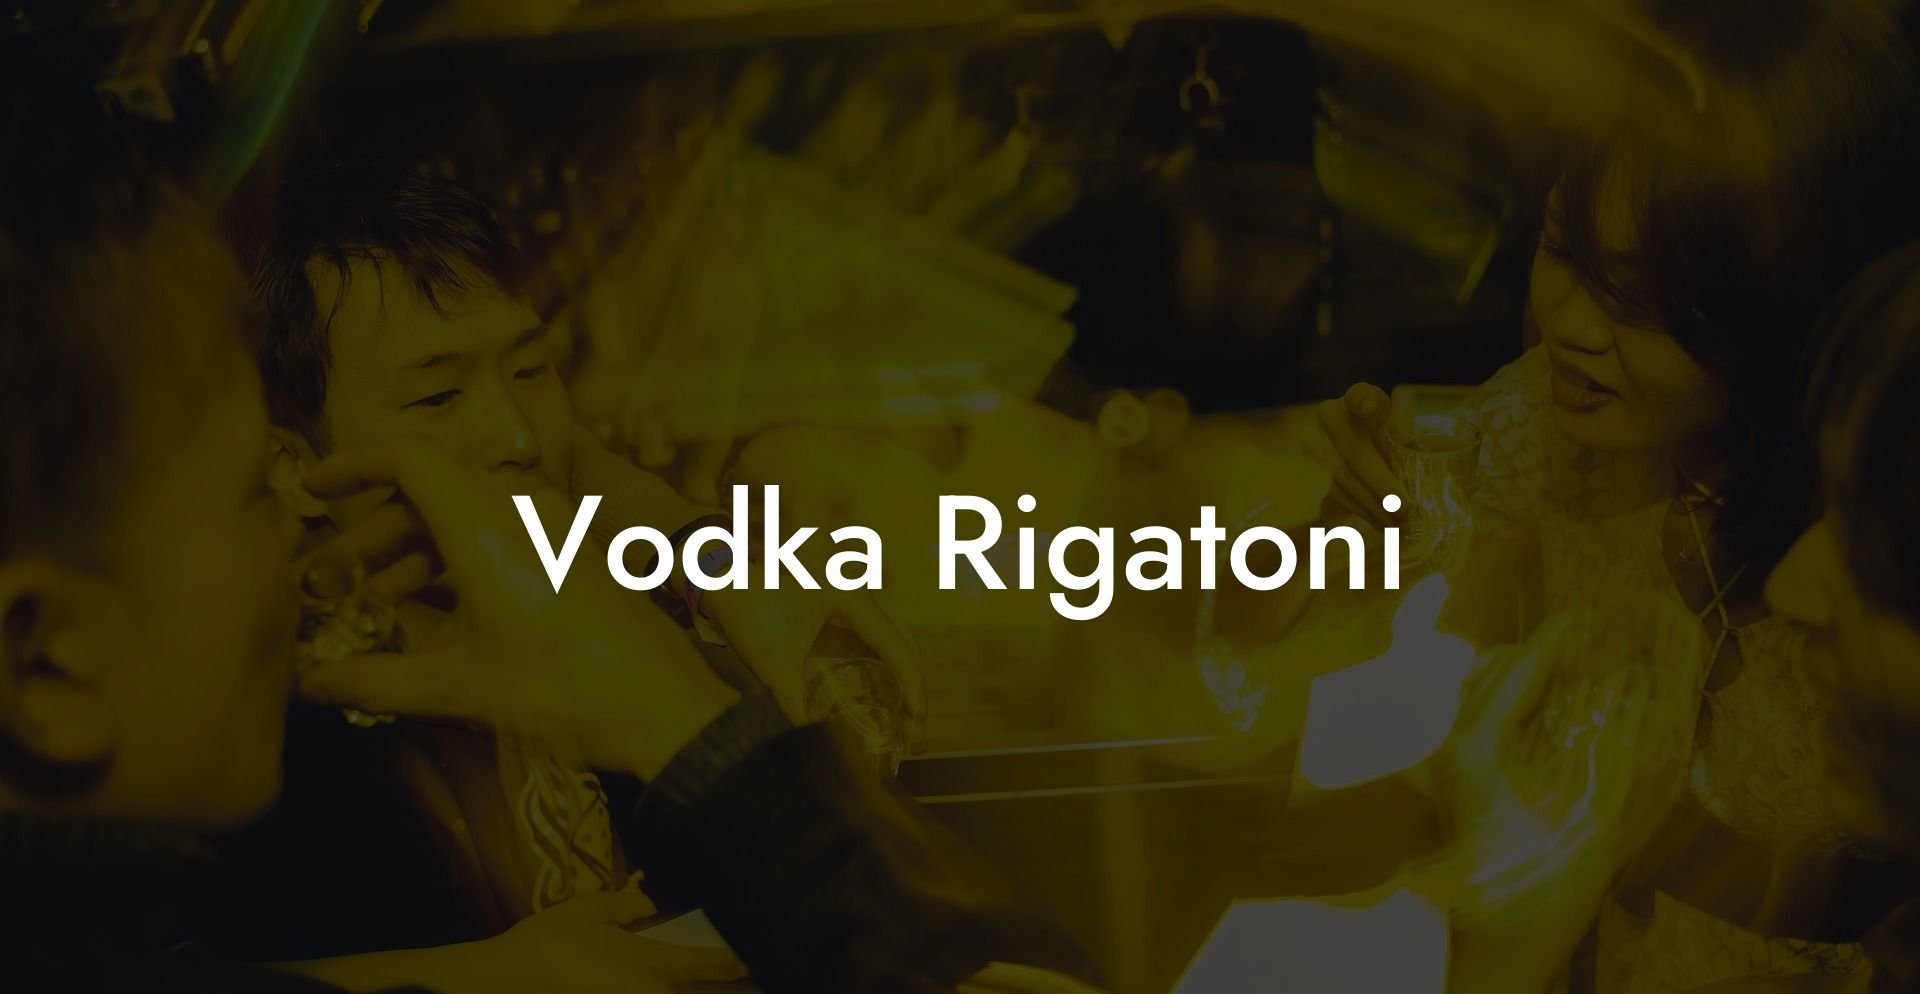 Vodka Rigatoni